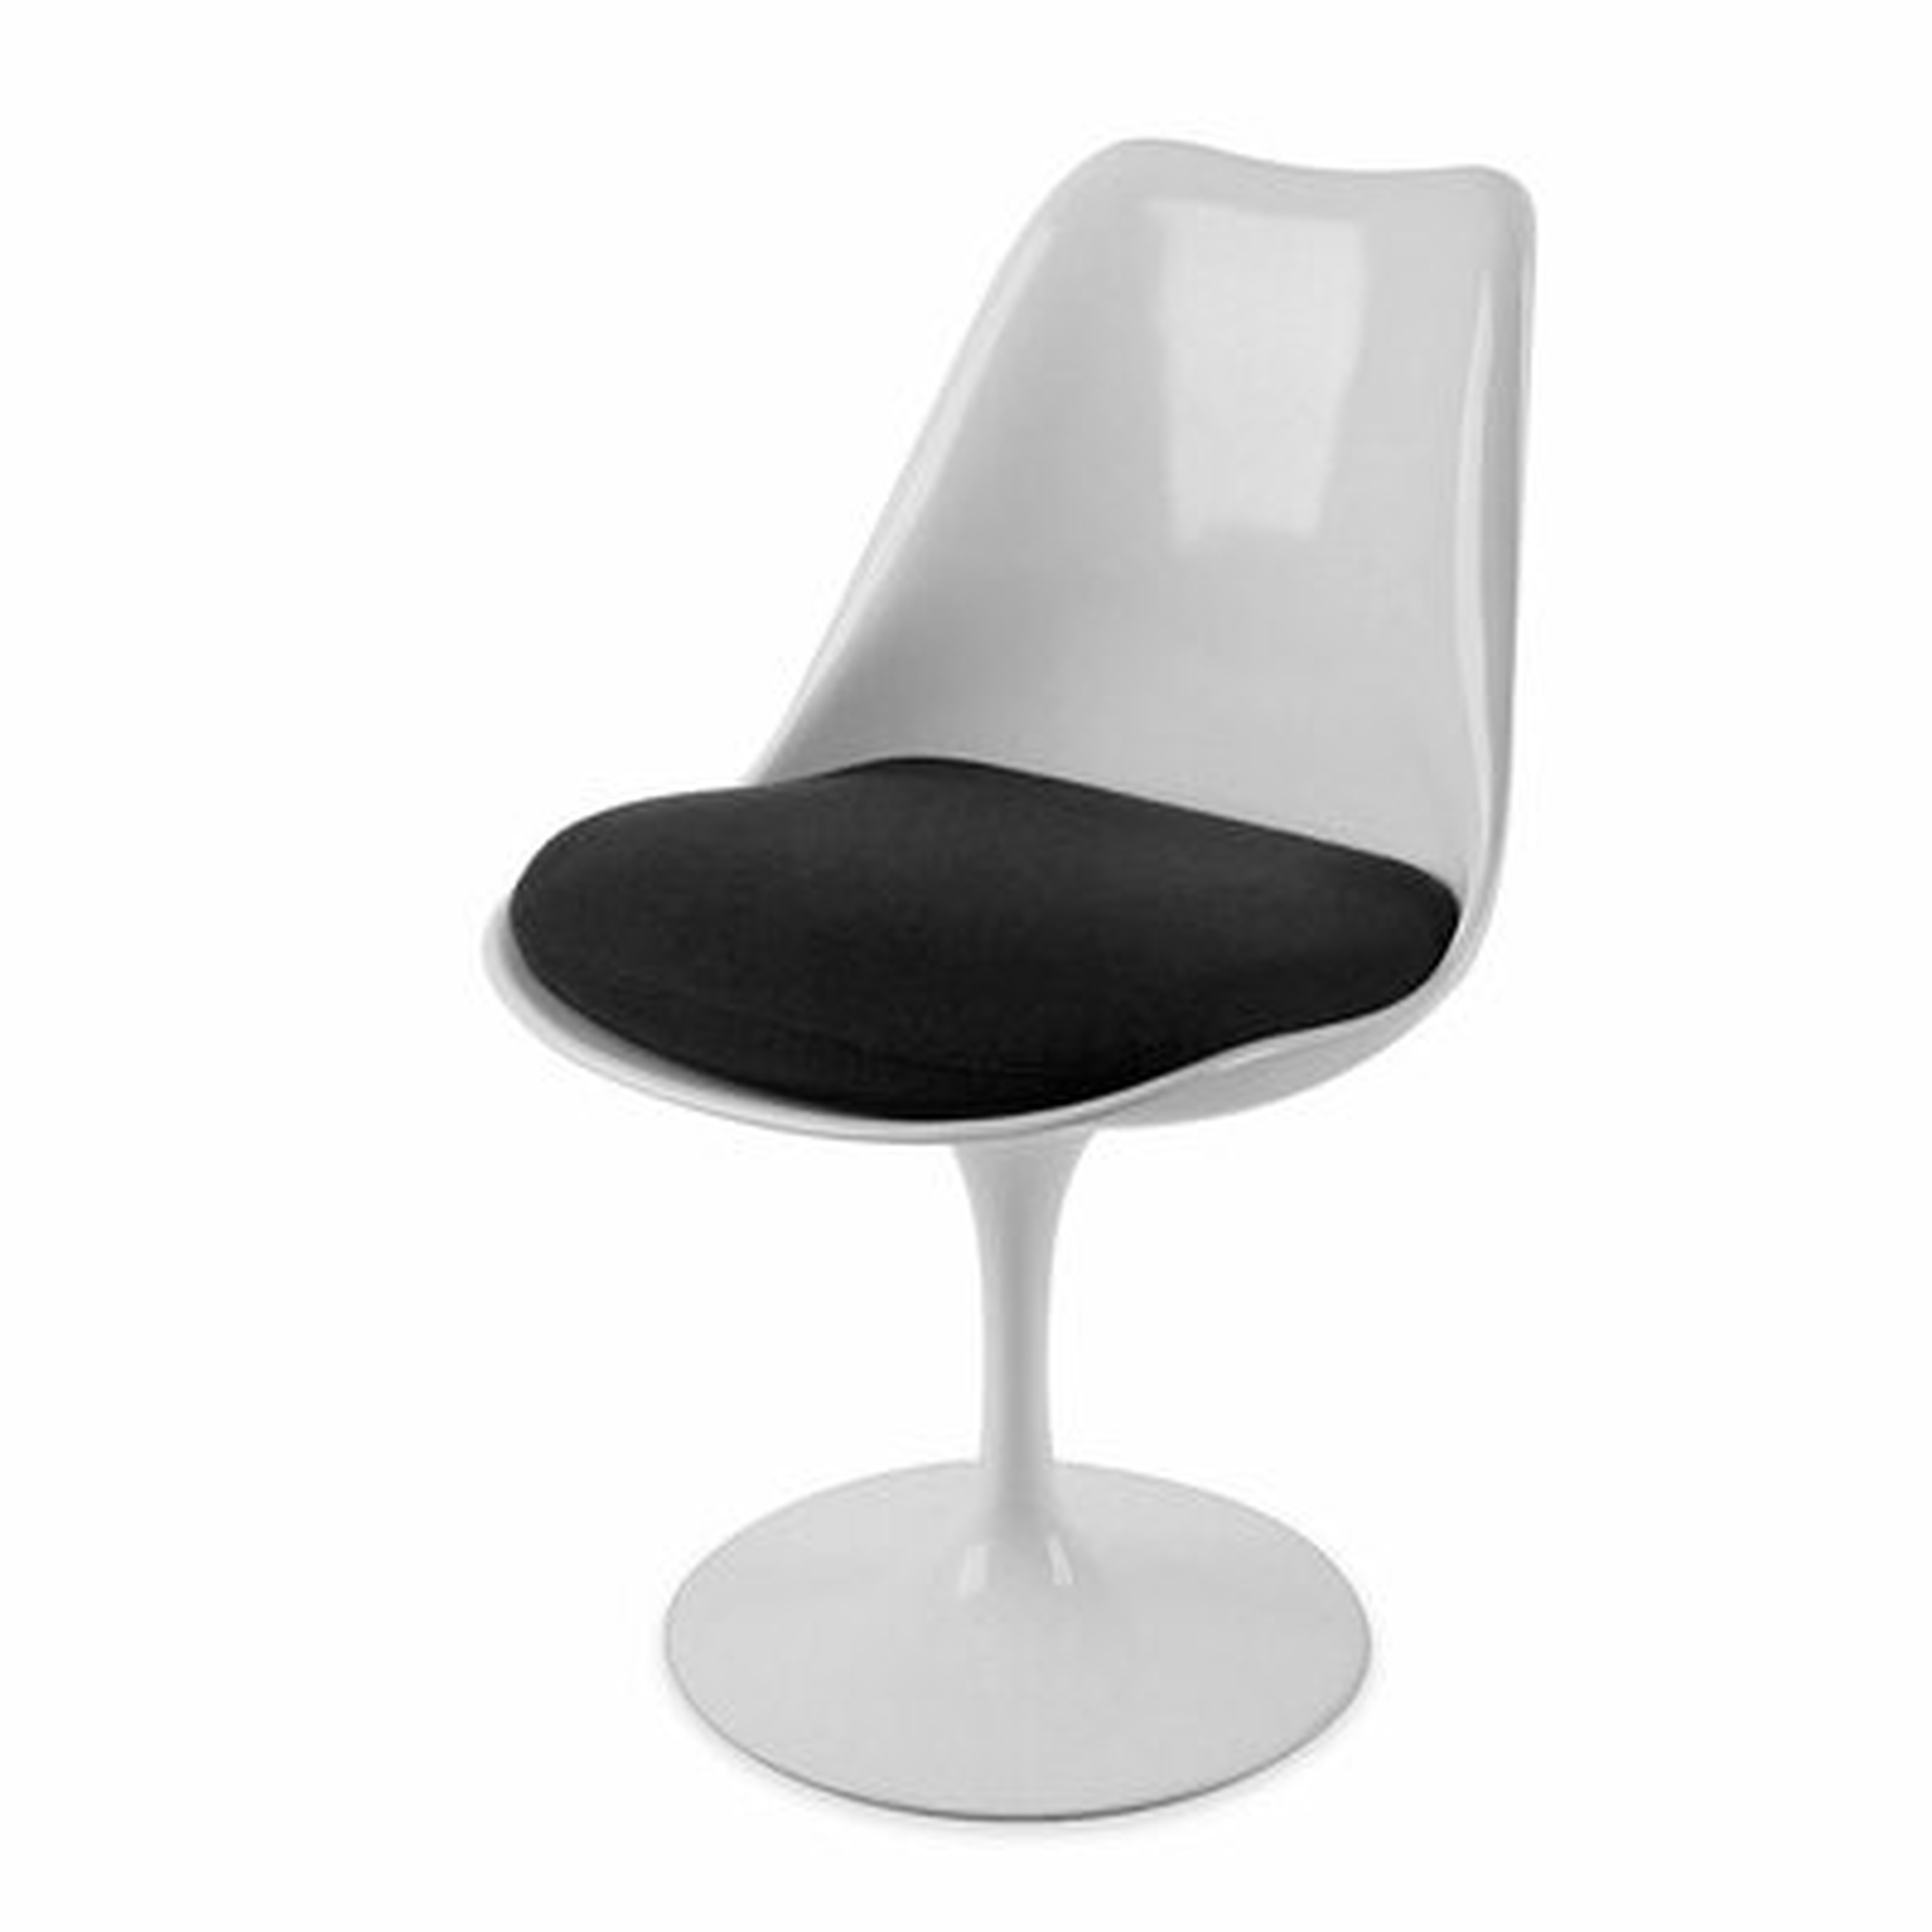 Eloi Mid-Century Dining Chair - Wayfair